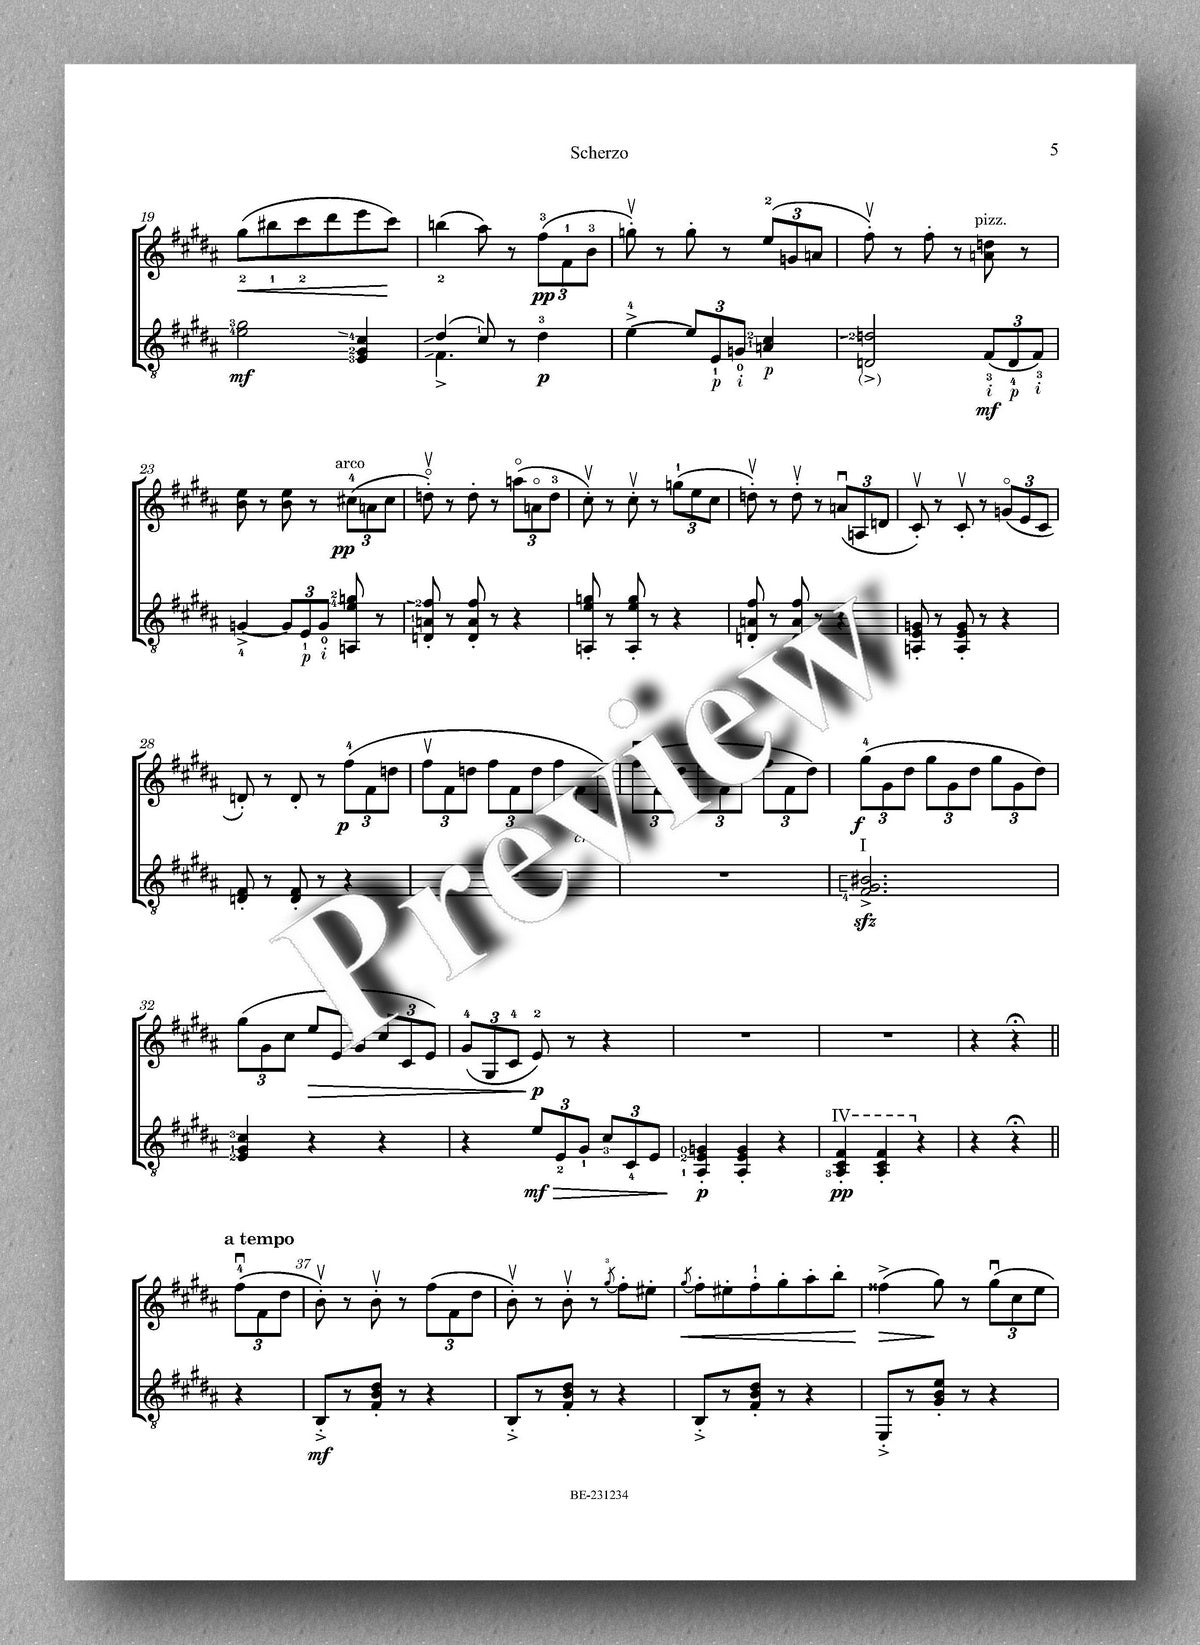 Ferdinand Rebay, Scherzo von Schubert - preview of the music score 2